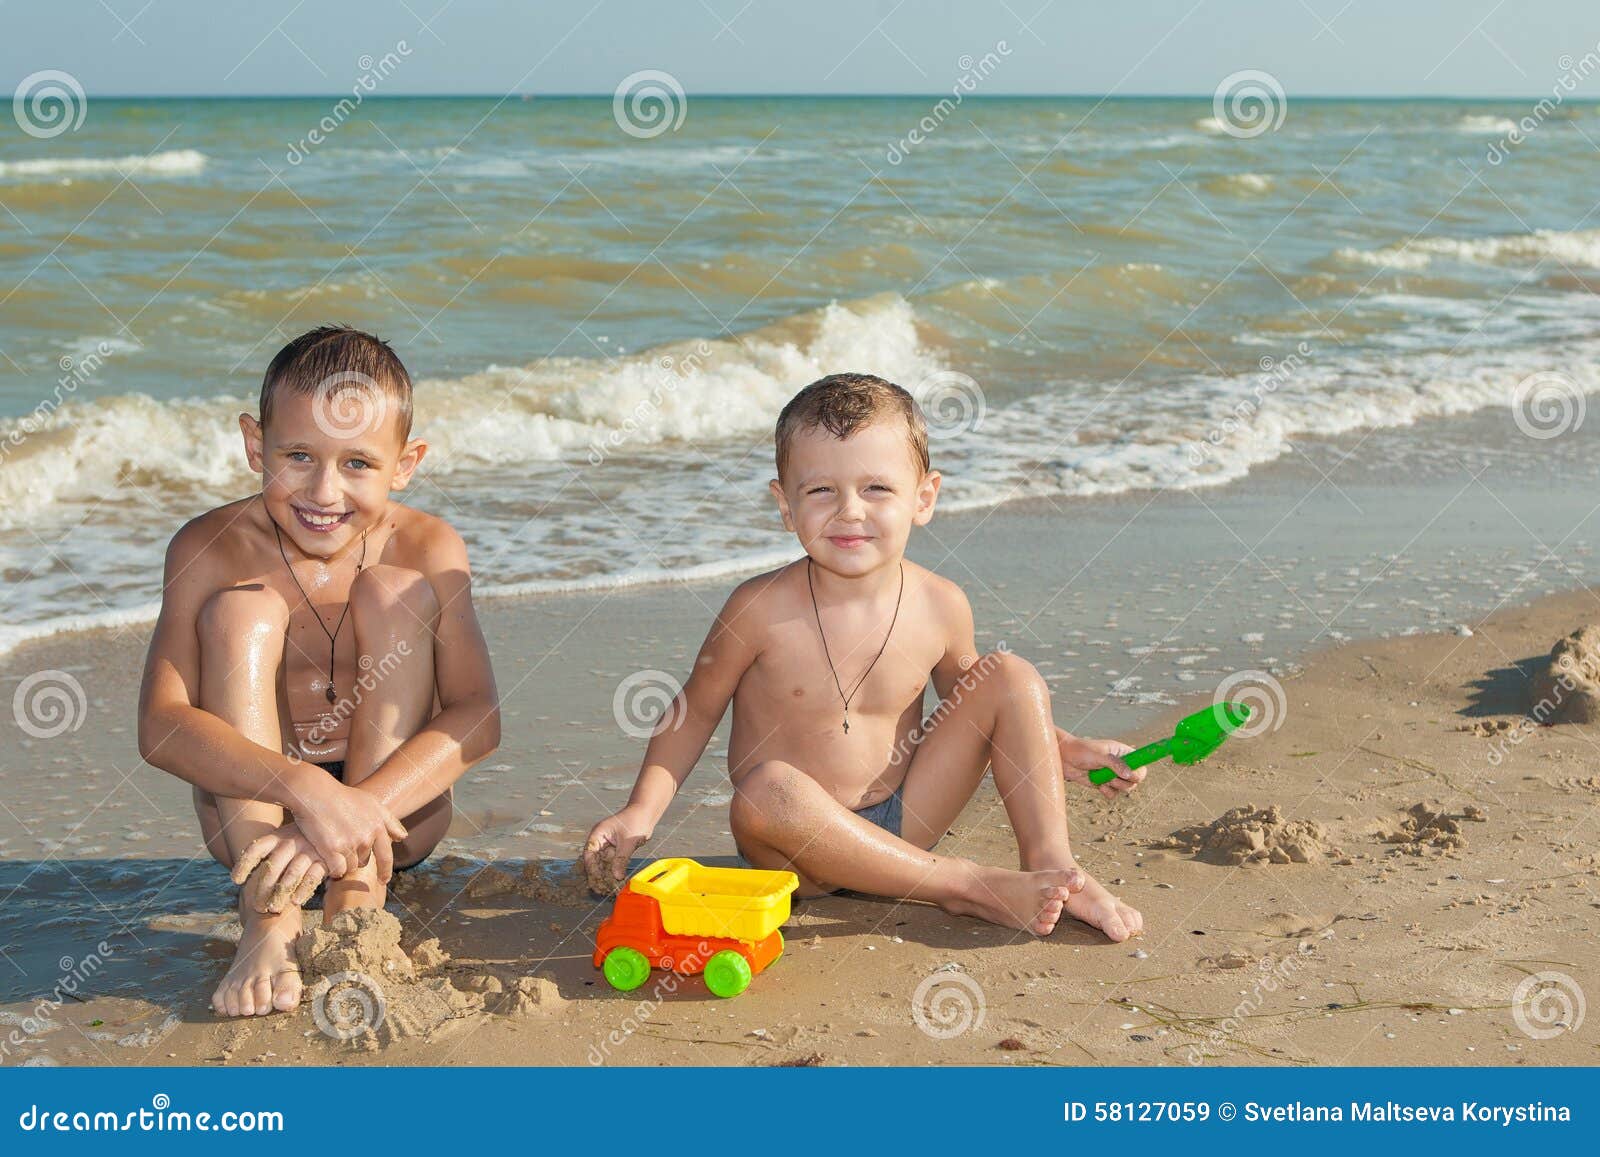 нудиский пляж с голыми детьми фото 101